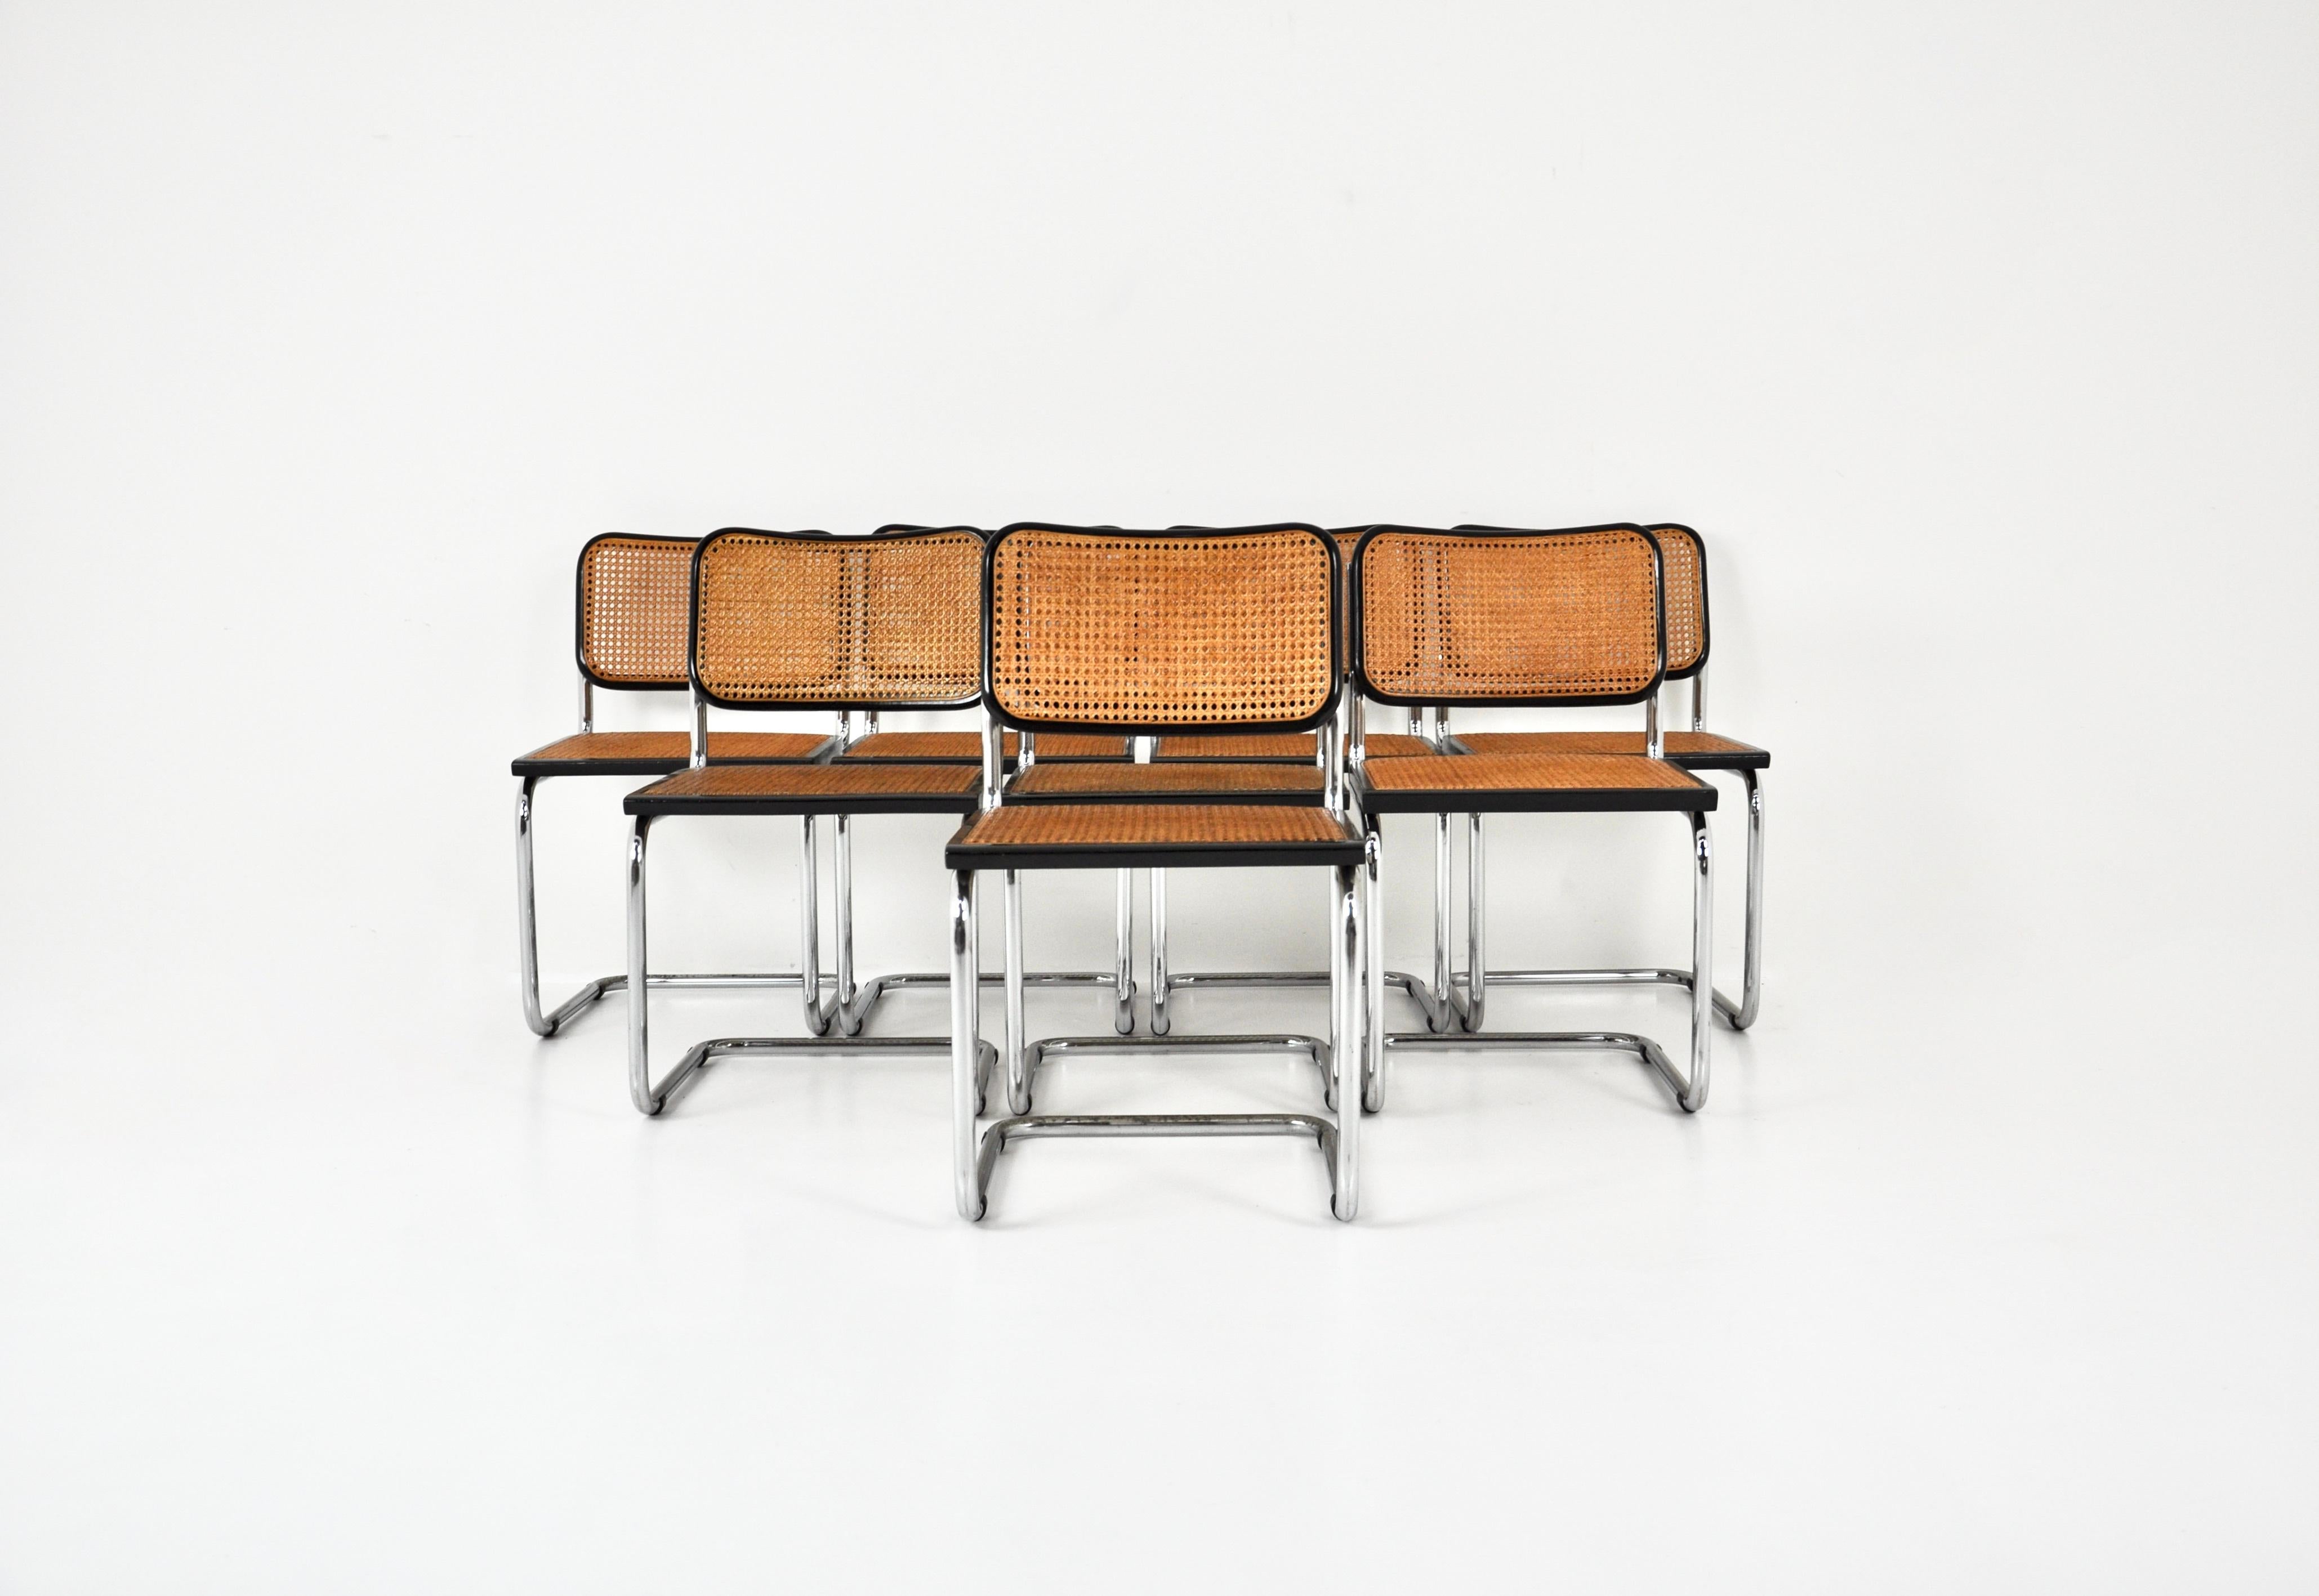 8er-Set  schwarze Stühle aus Metall, Holz und Rattan. Sitzhöhe: 46 cm. Abnutzung durch die Zeit und das Alter der Stühle. 